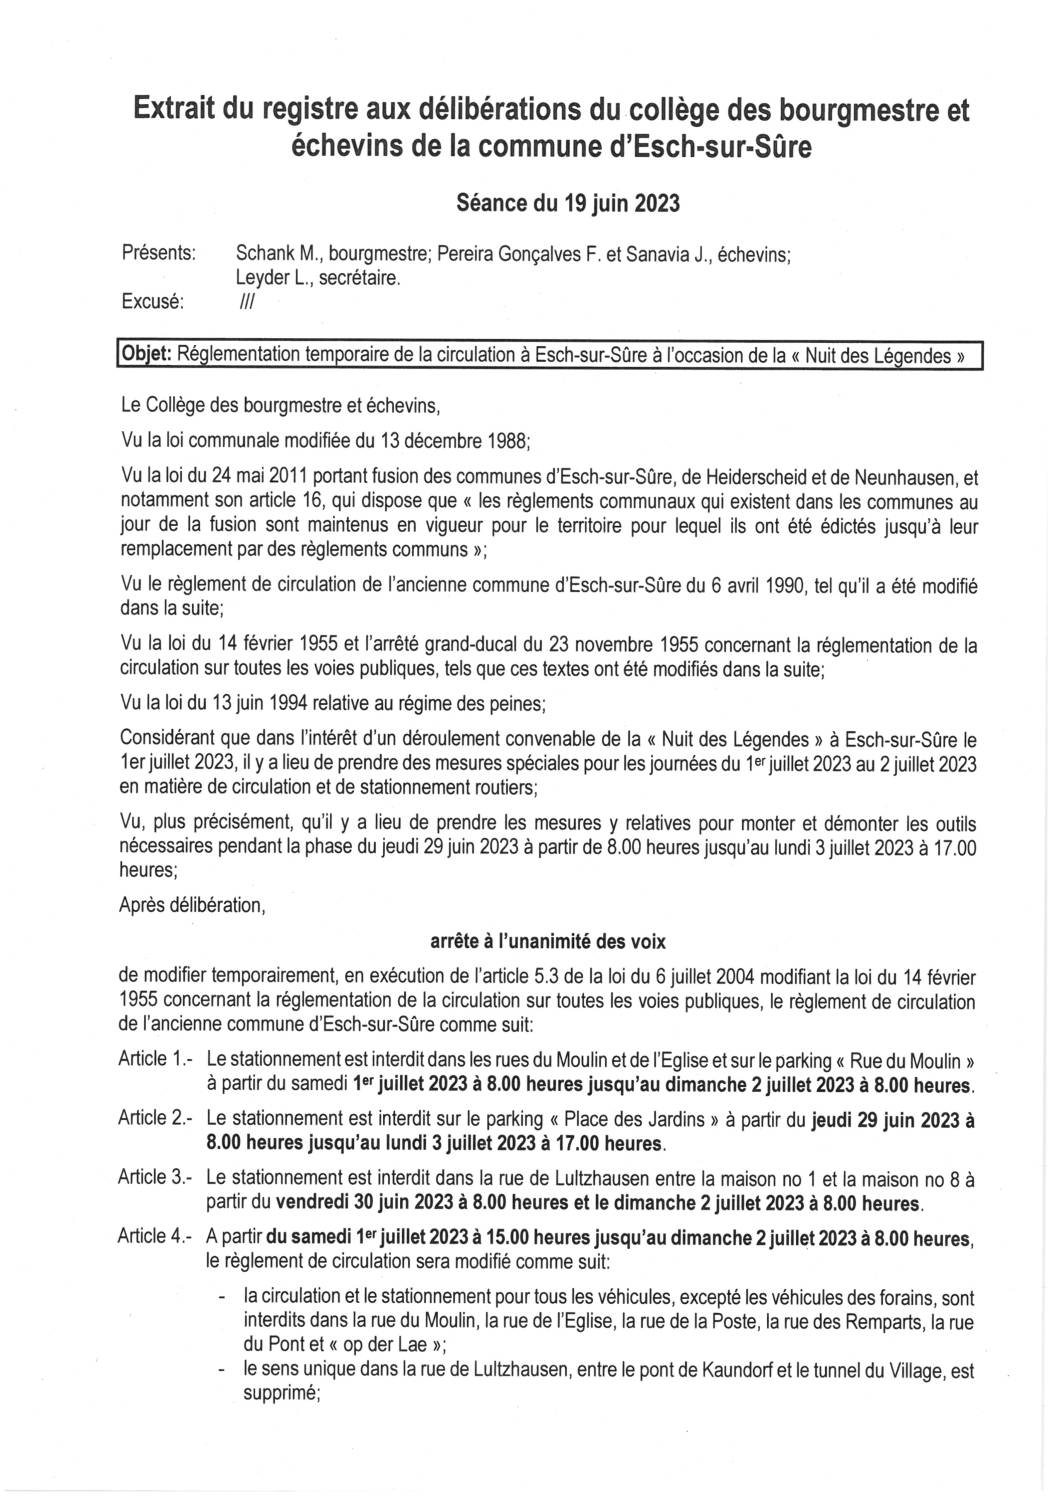 2023.06.21_Règlement temporaire de circulation à Esch-sur-Sûre à l'occasion de la Nuit des Légendes